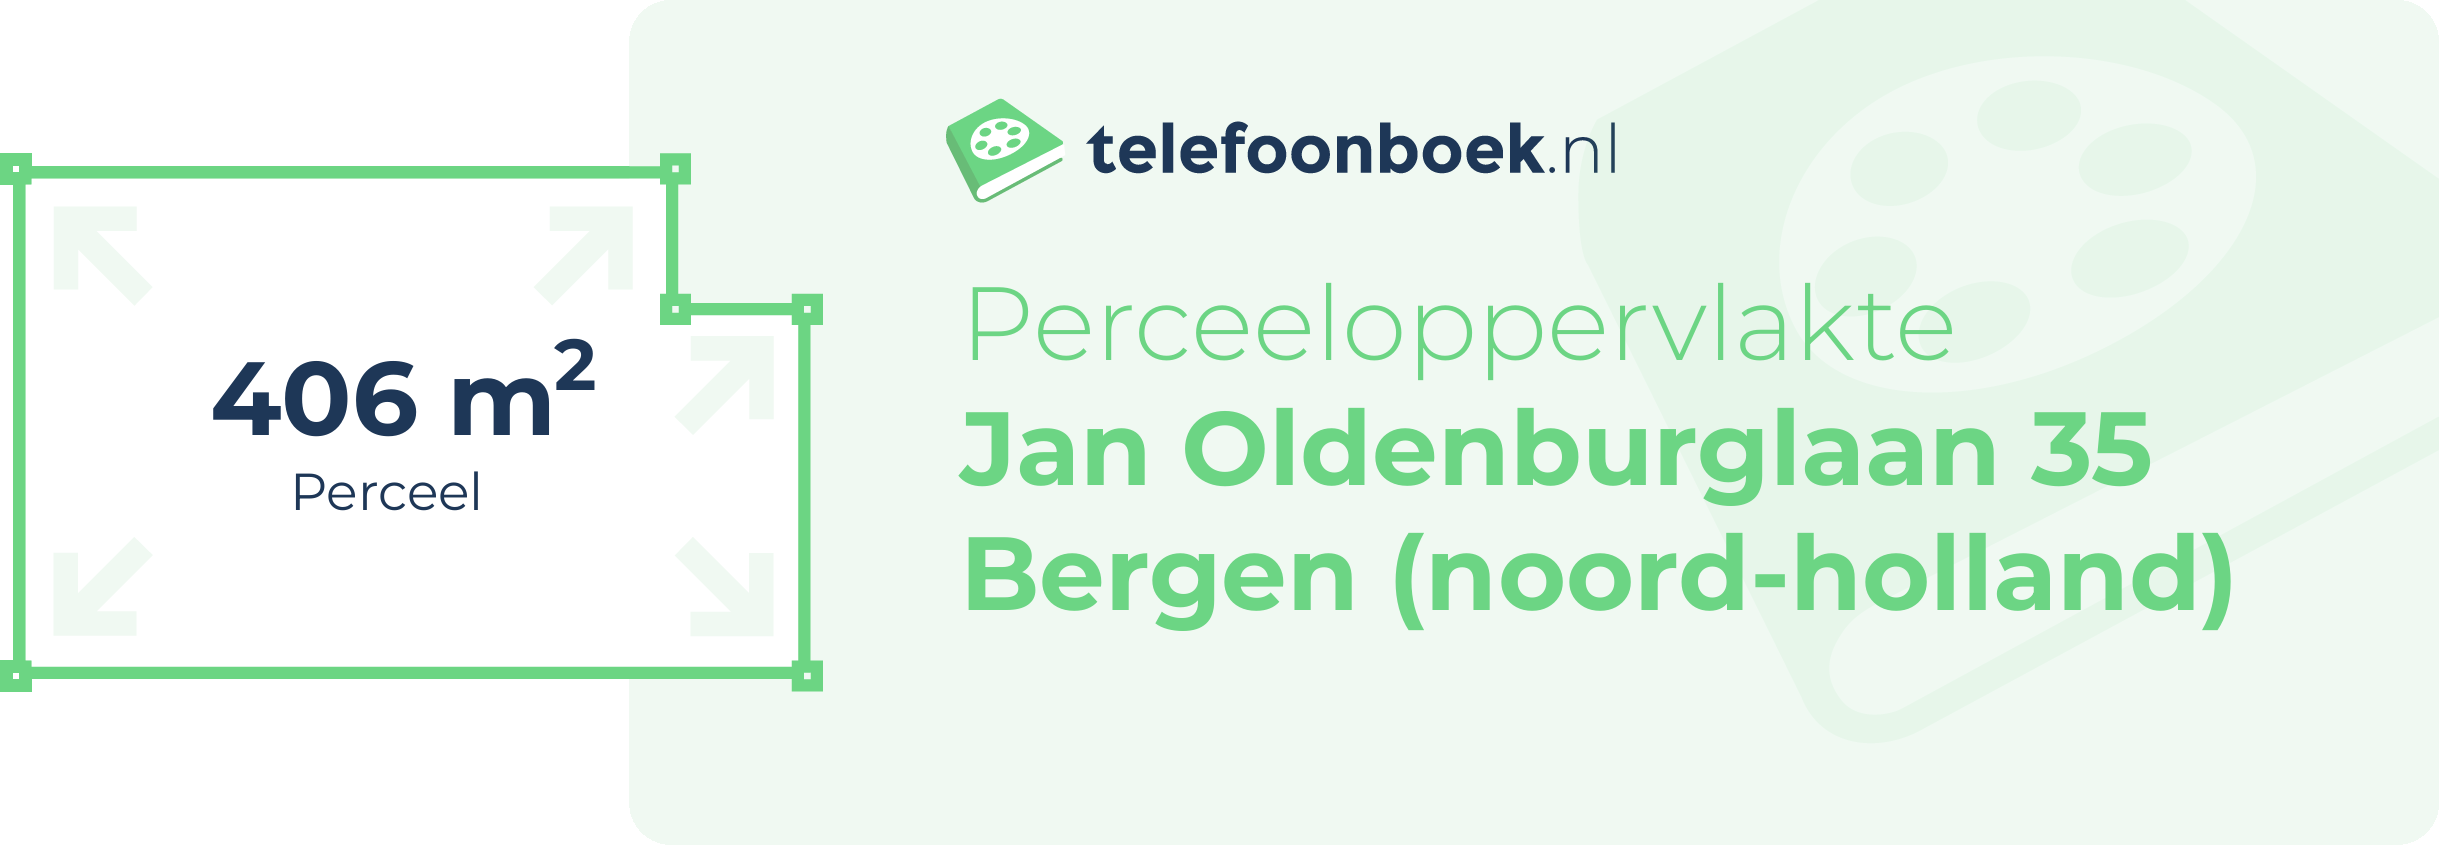 Perceeloppervlakte Jan Oldenburglaan 35 Bergen (Noord-Holland)